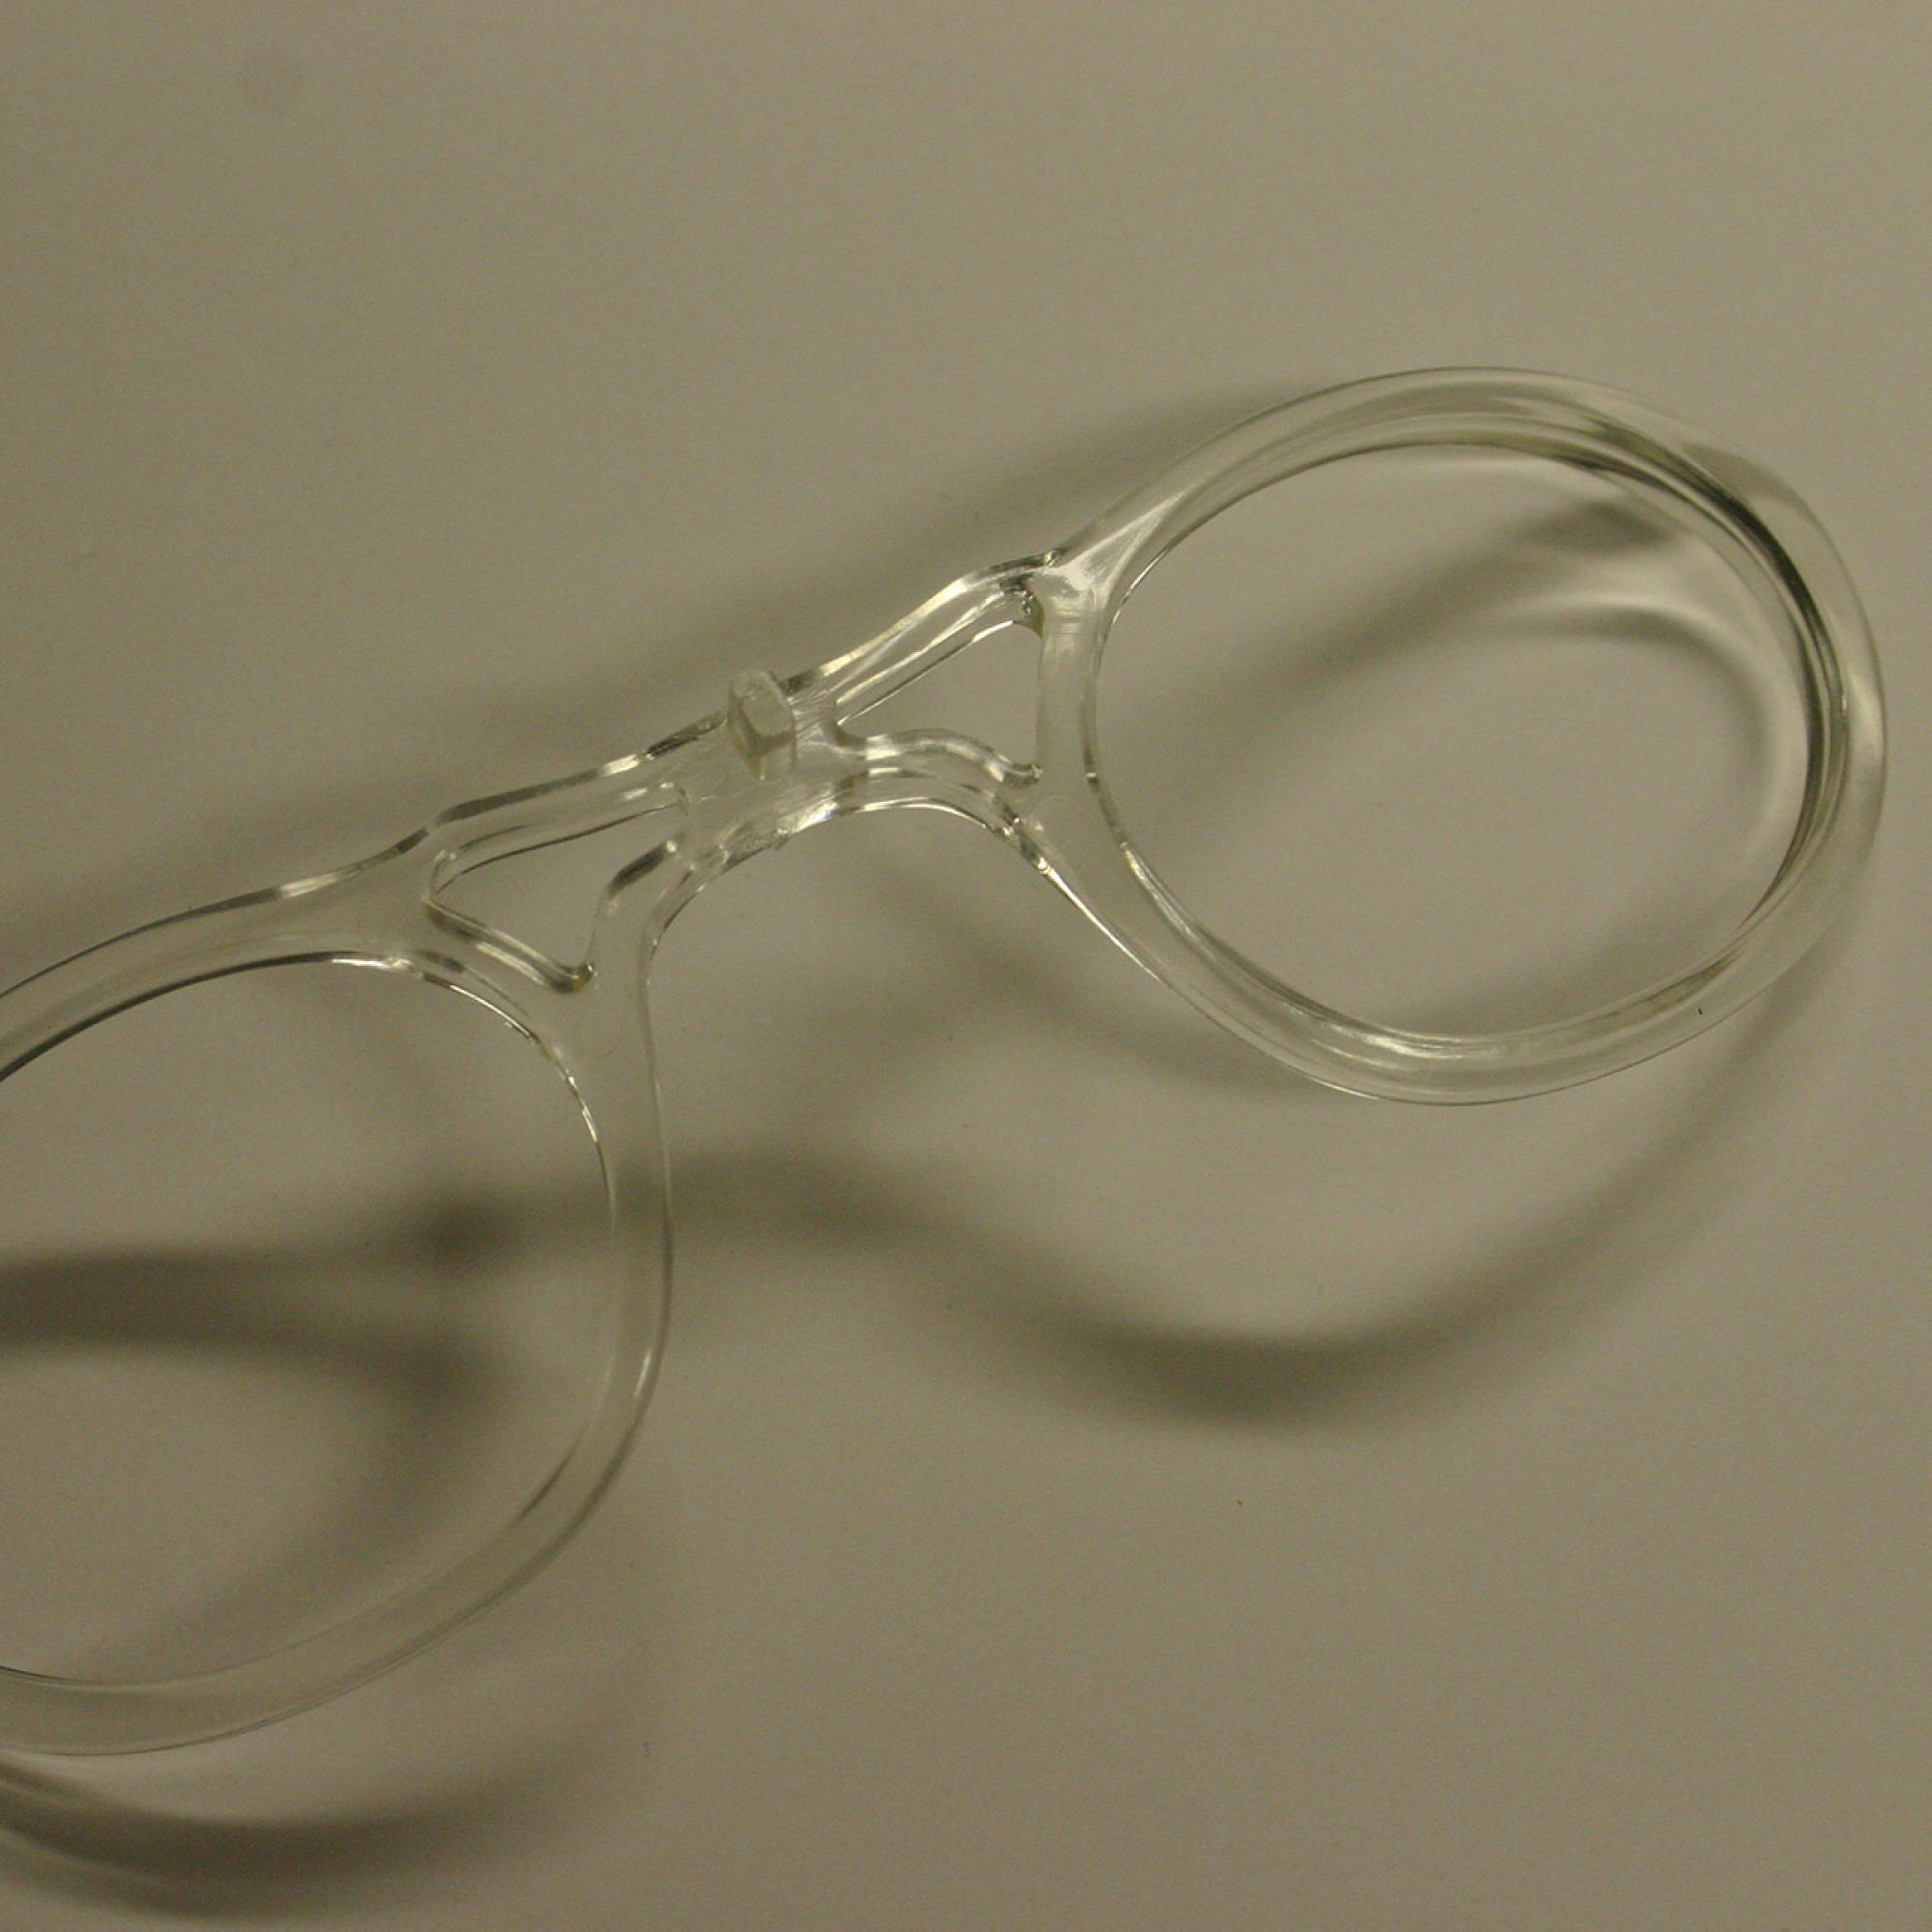 NAVIGATOR SPIDER Sportbrille, Bikebrille, UV-Lens, 30g